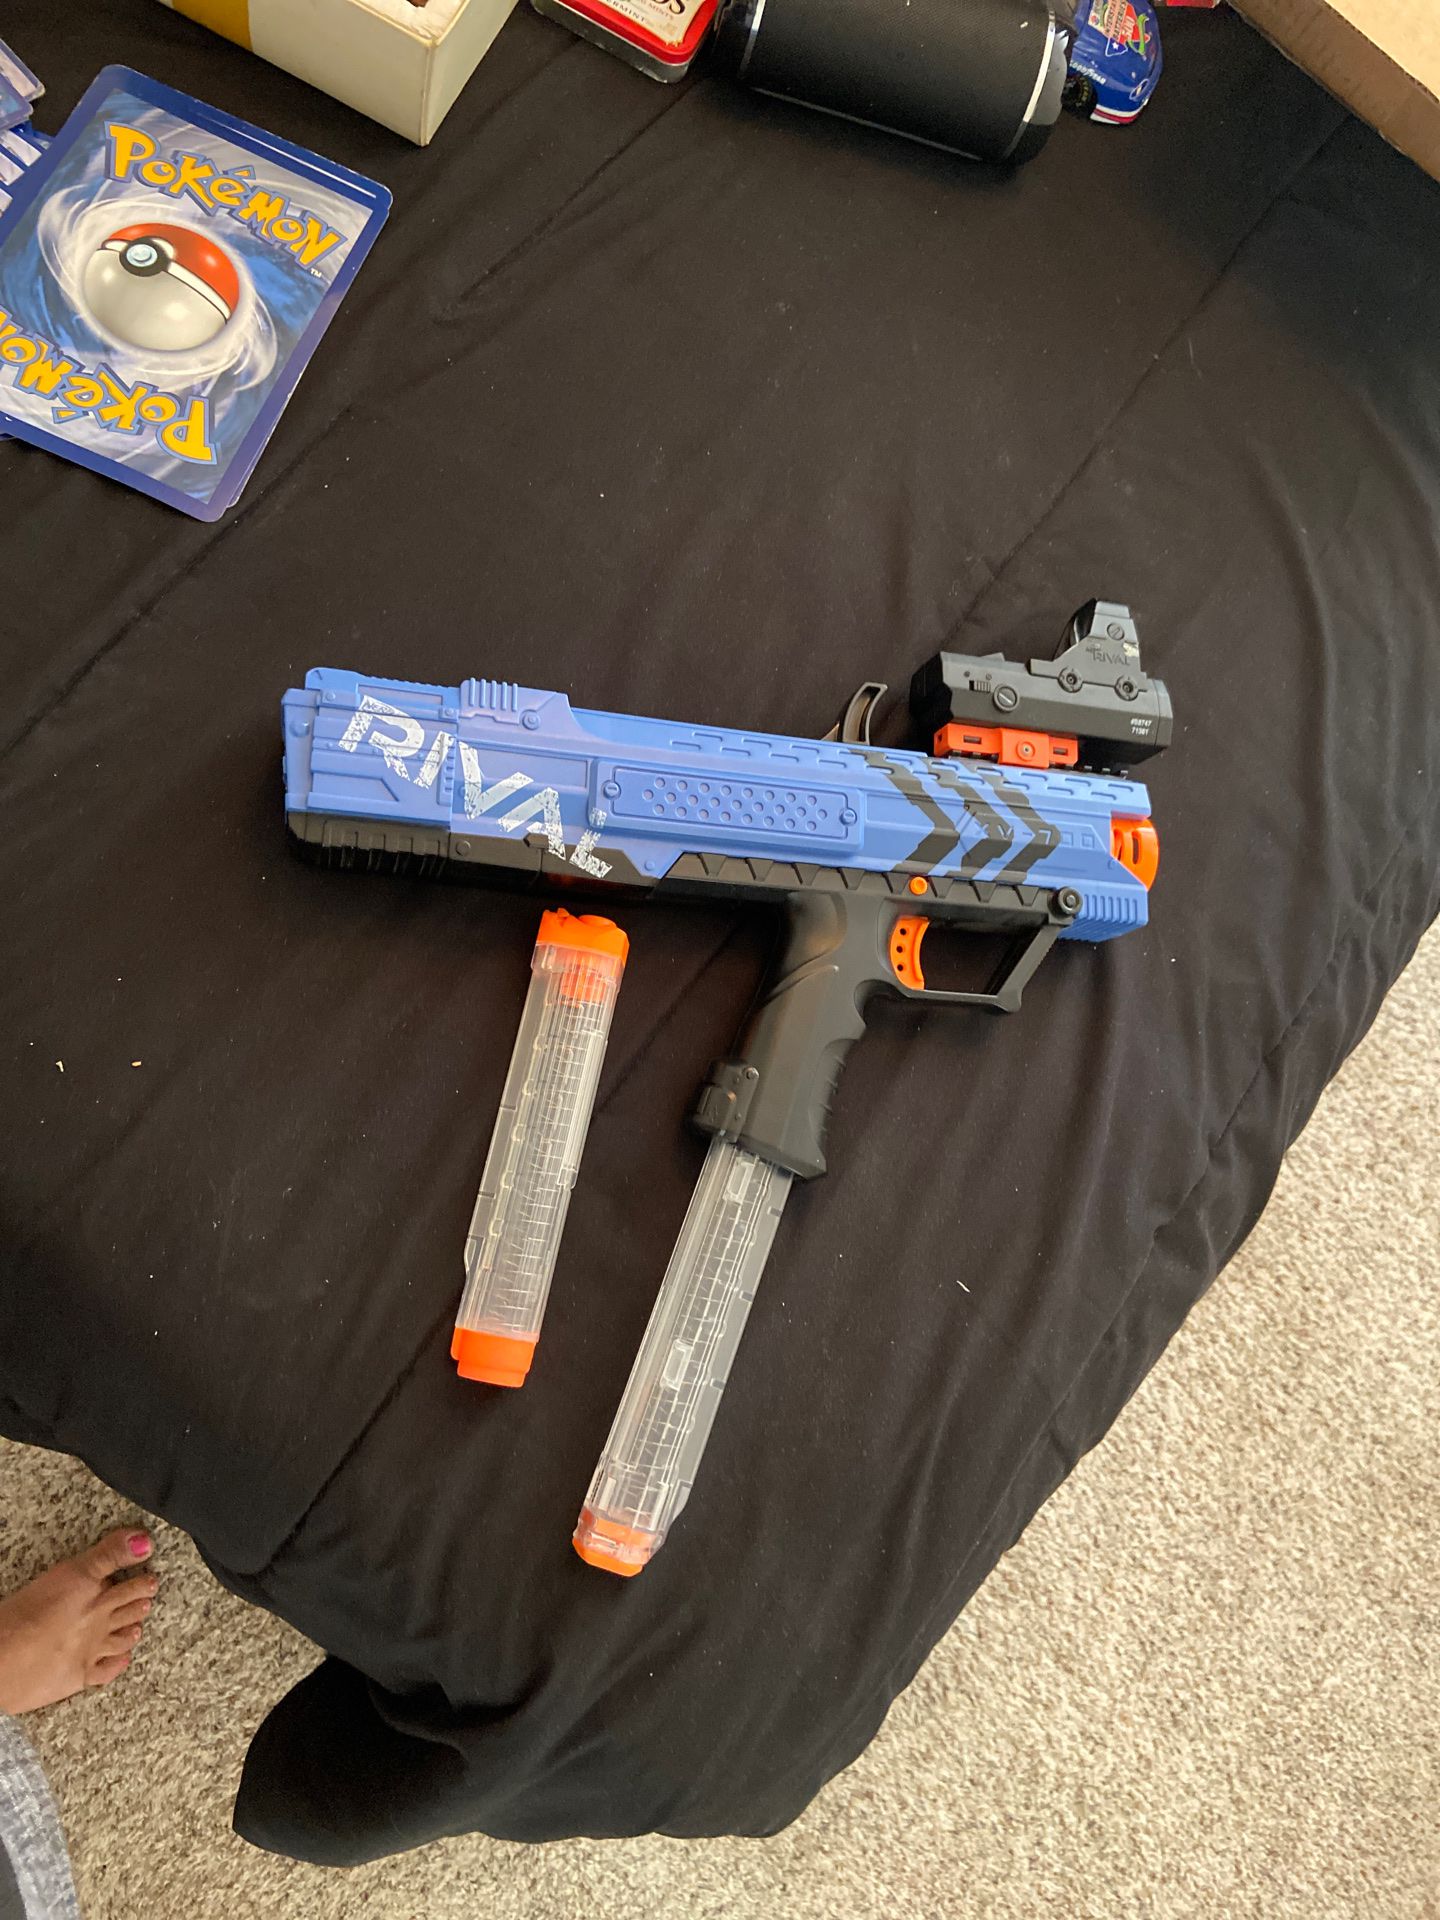 Nerf rival cvs 700 fun toy gun